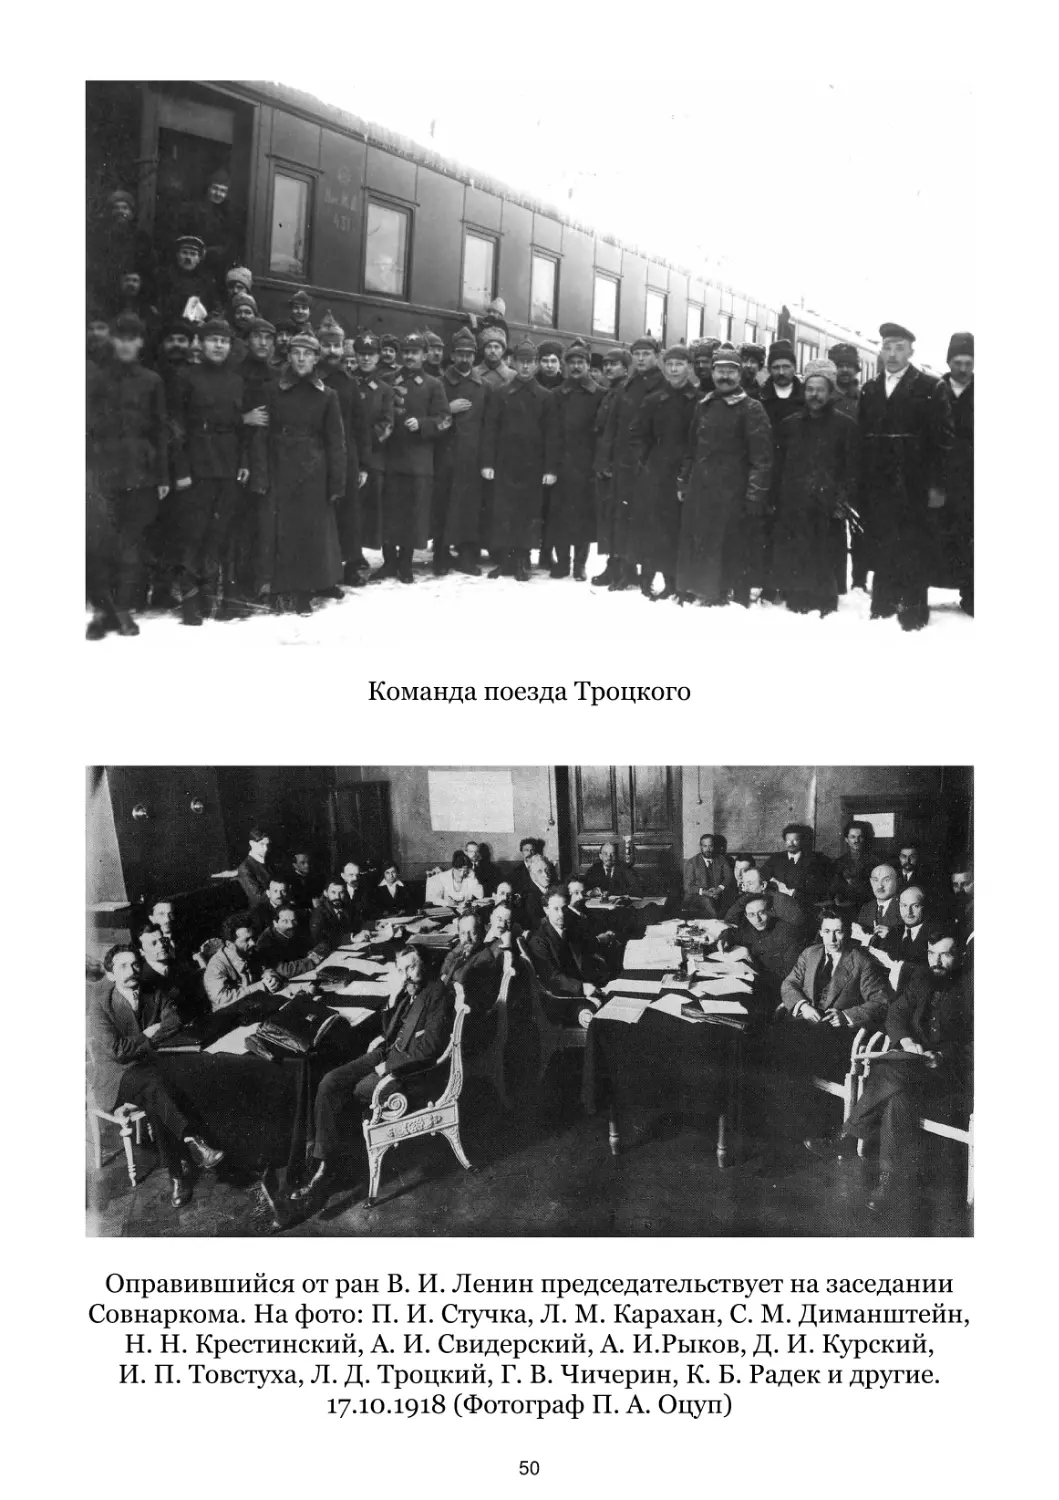 Команда поезда Троцкого
Оправившийся от ран В. И. Ленин председательствует на заседании Совнаркома. 17.10.1918